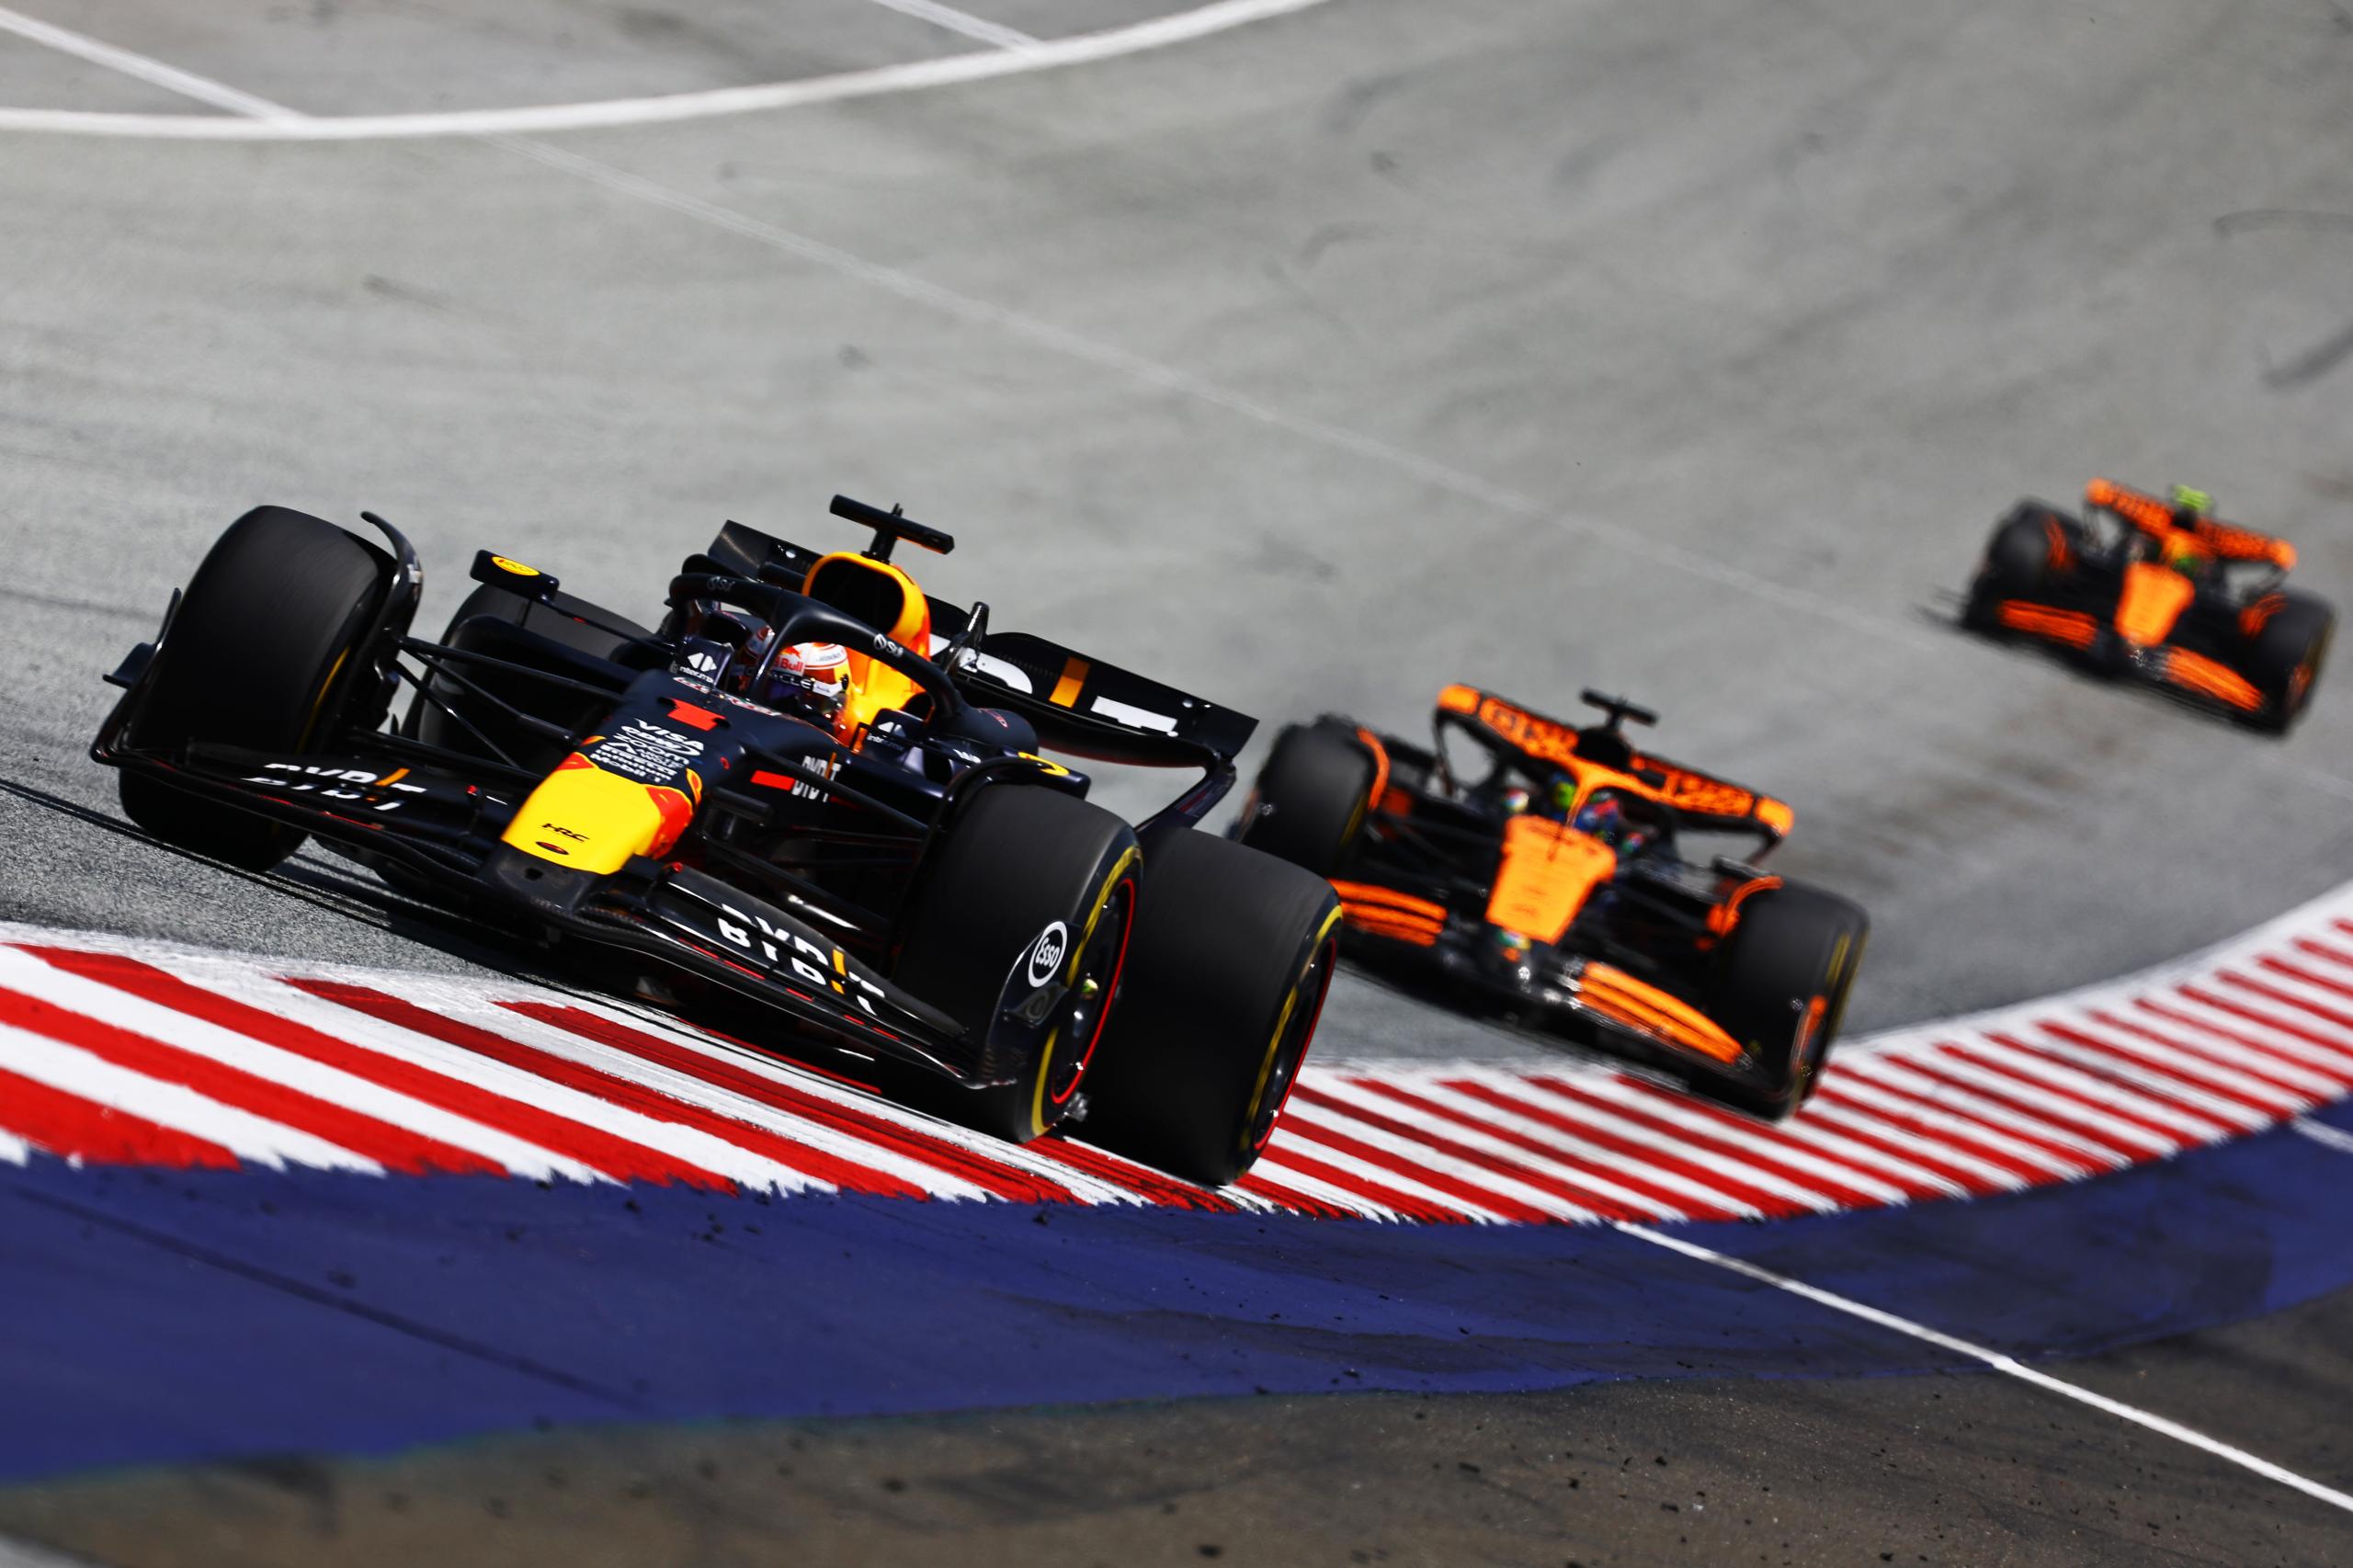 Nouveau triomphe pour Verstappen en Sprint, victorieux en Autriche - Crédit photo : Red Bull Content Pool - Getty Images